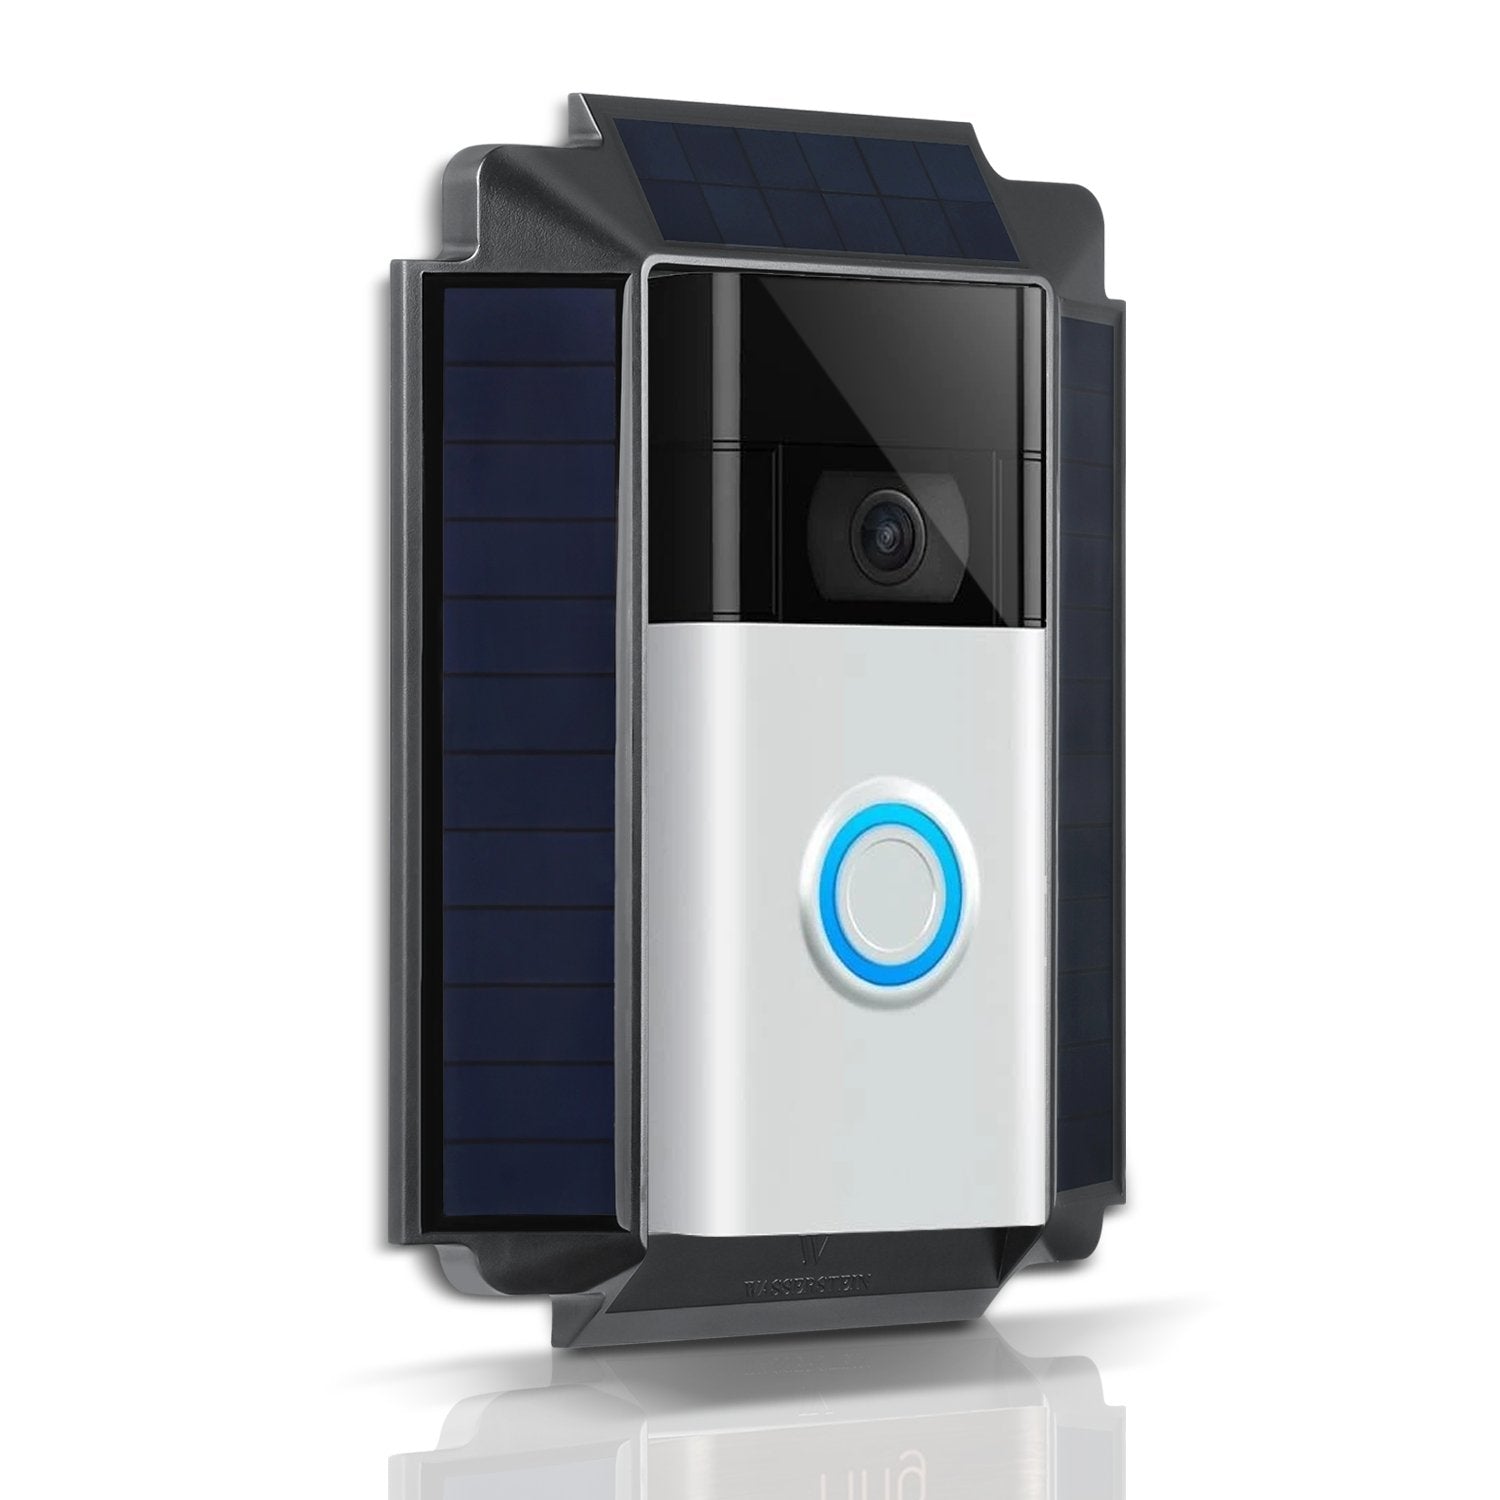 Wasserstein Premium Solar Charger for Ring Video Doorbell 2nd Gen